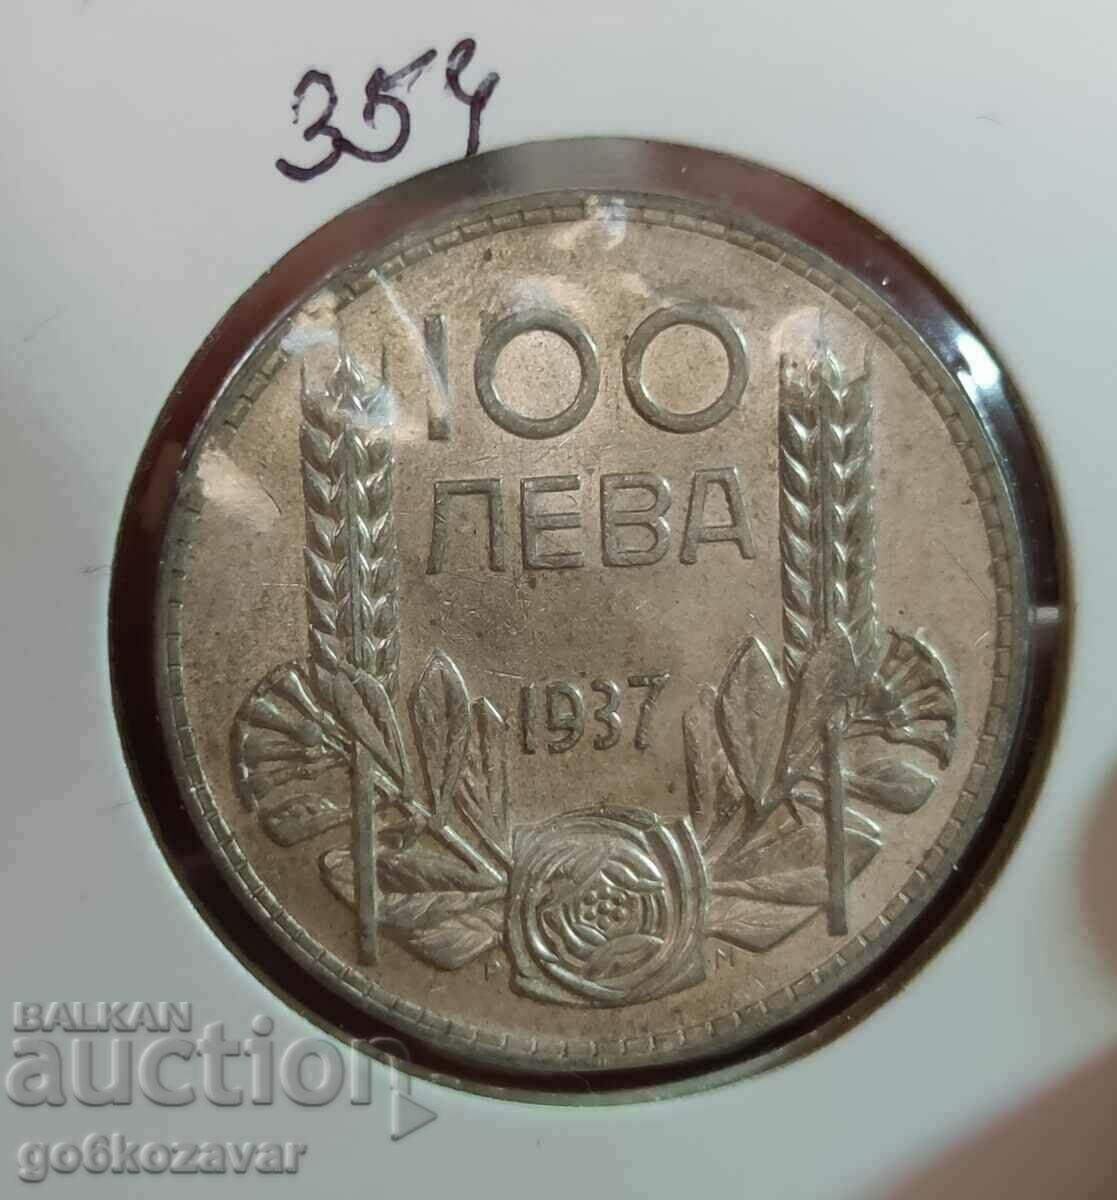 Βουλγαρία 100 BGN Ασήμι 1937. Ωραίο νόμισμα για συλλογή!